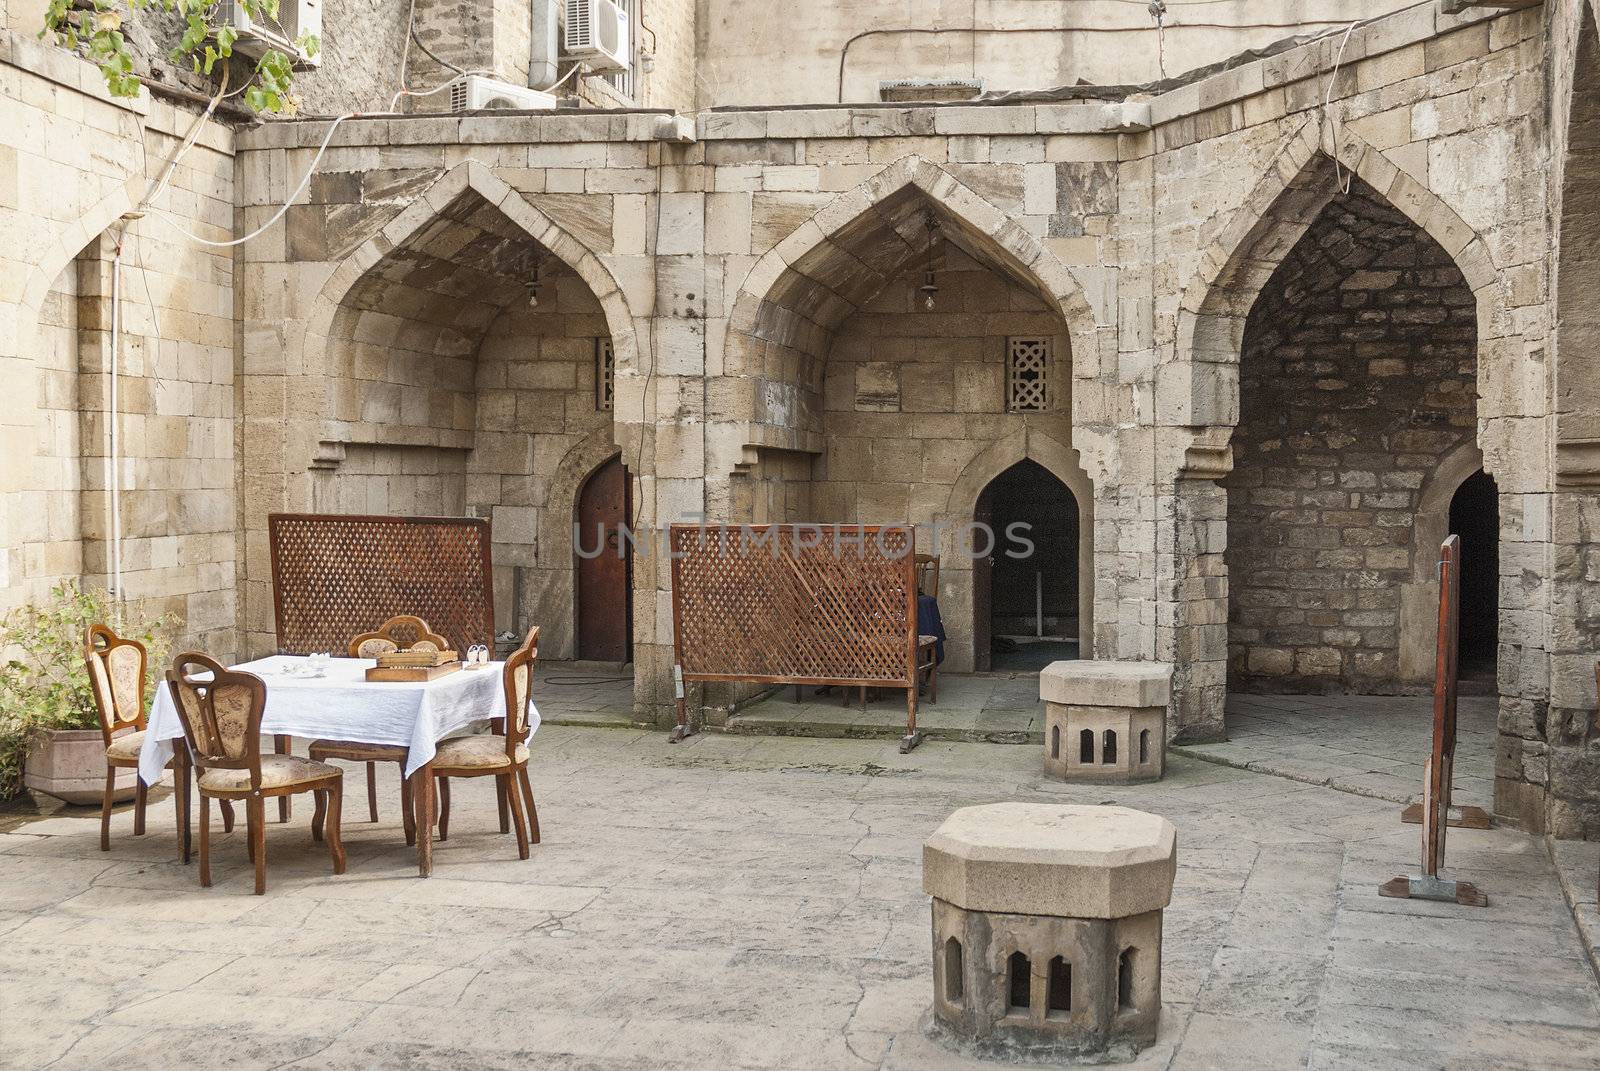 architecture in baku azerbaijan caravanserai restaurant